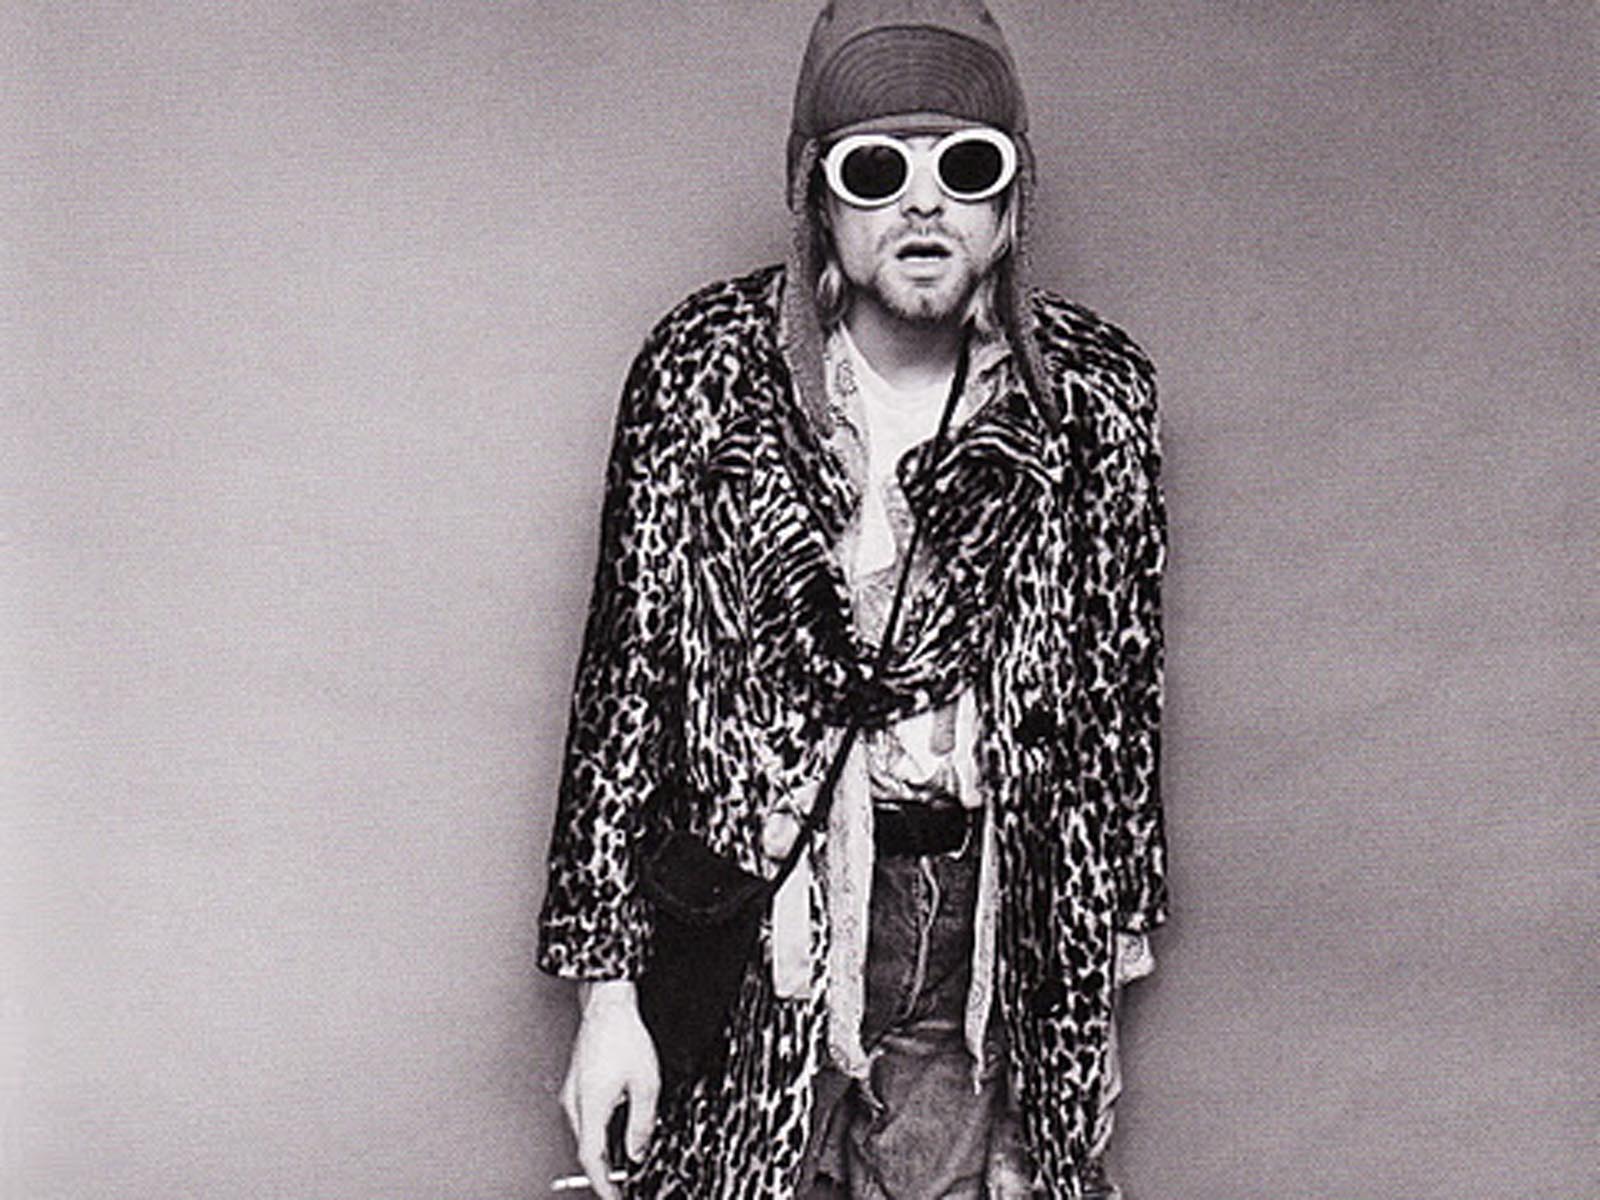 Kurt Cobain Image Wallpapers,Kurt Cobain Wallpapers & Pictures ...